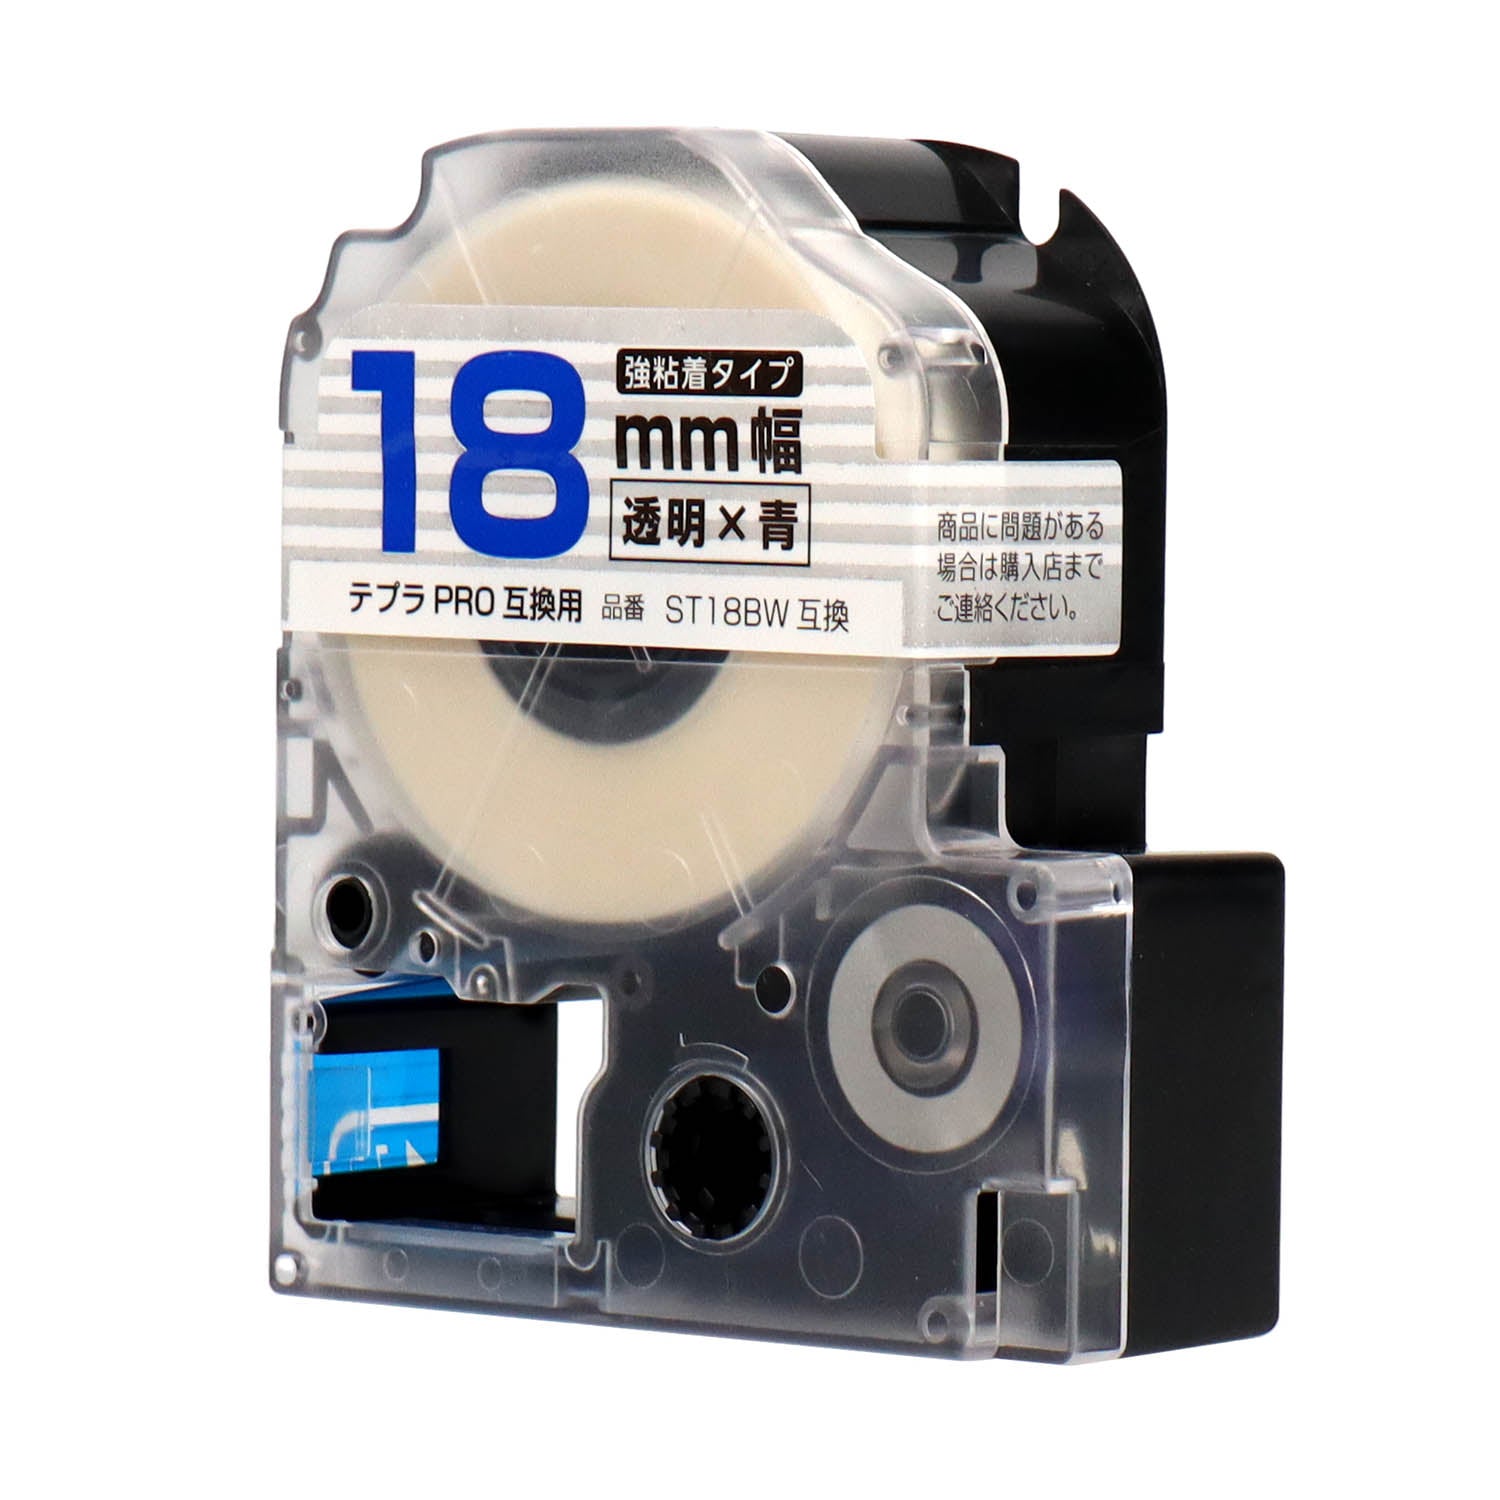 テプラPRO用互換テープカートリッジ 透明×青文字 18mm